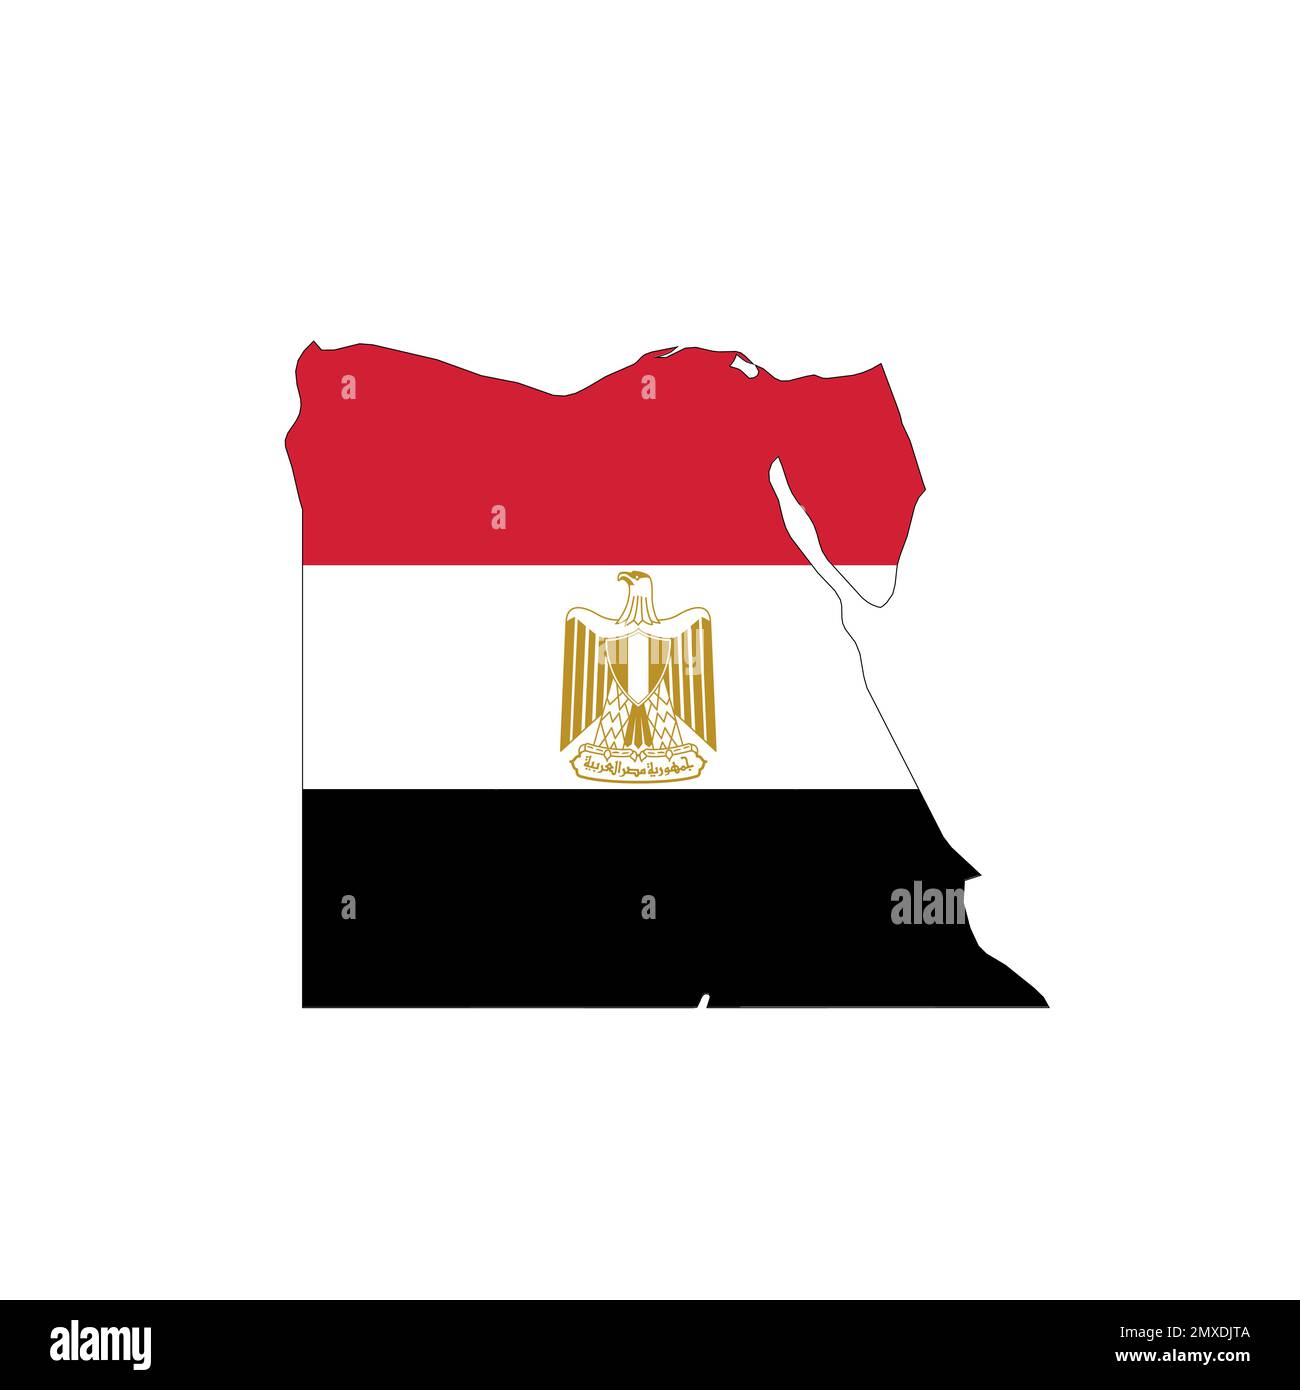 Drapeau national de l'Égypte en forme de carte de pays Image